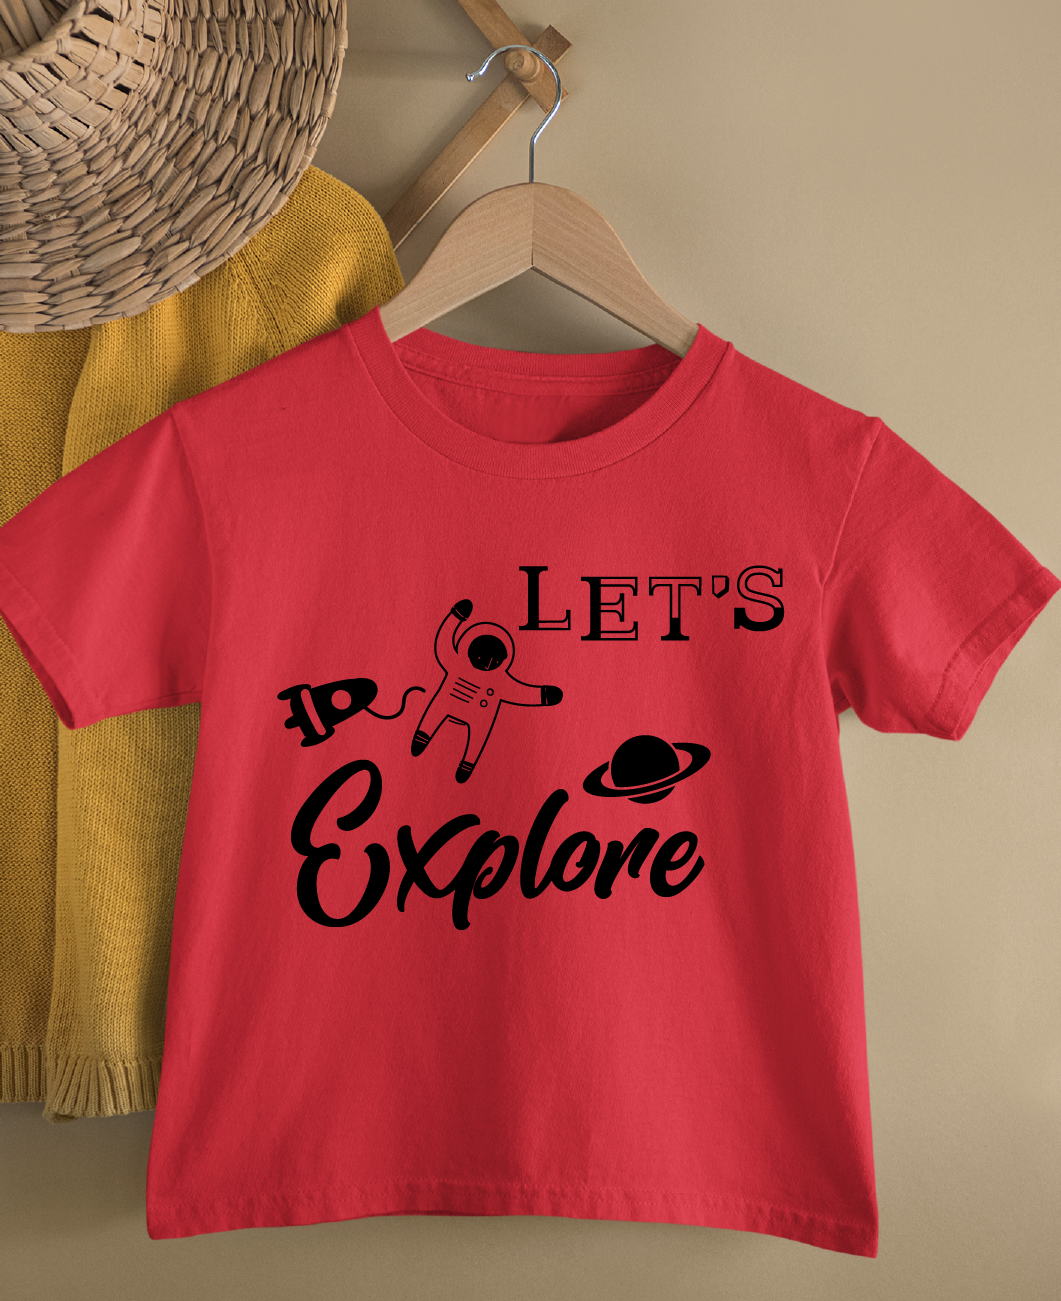 Let's Explore Kids Unisex T Shirt